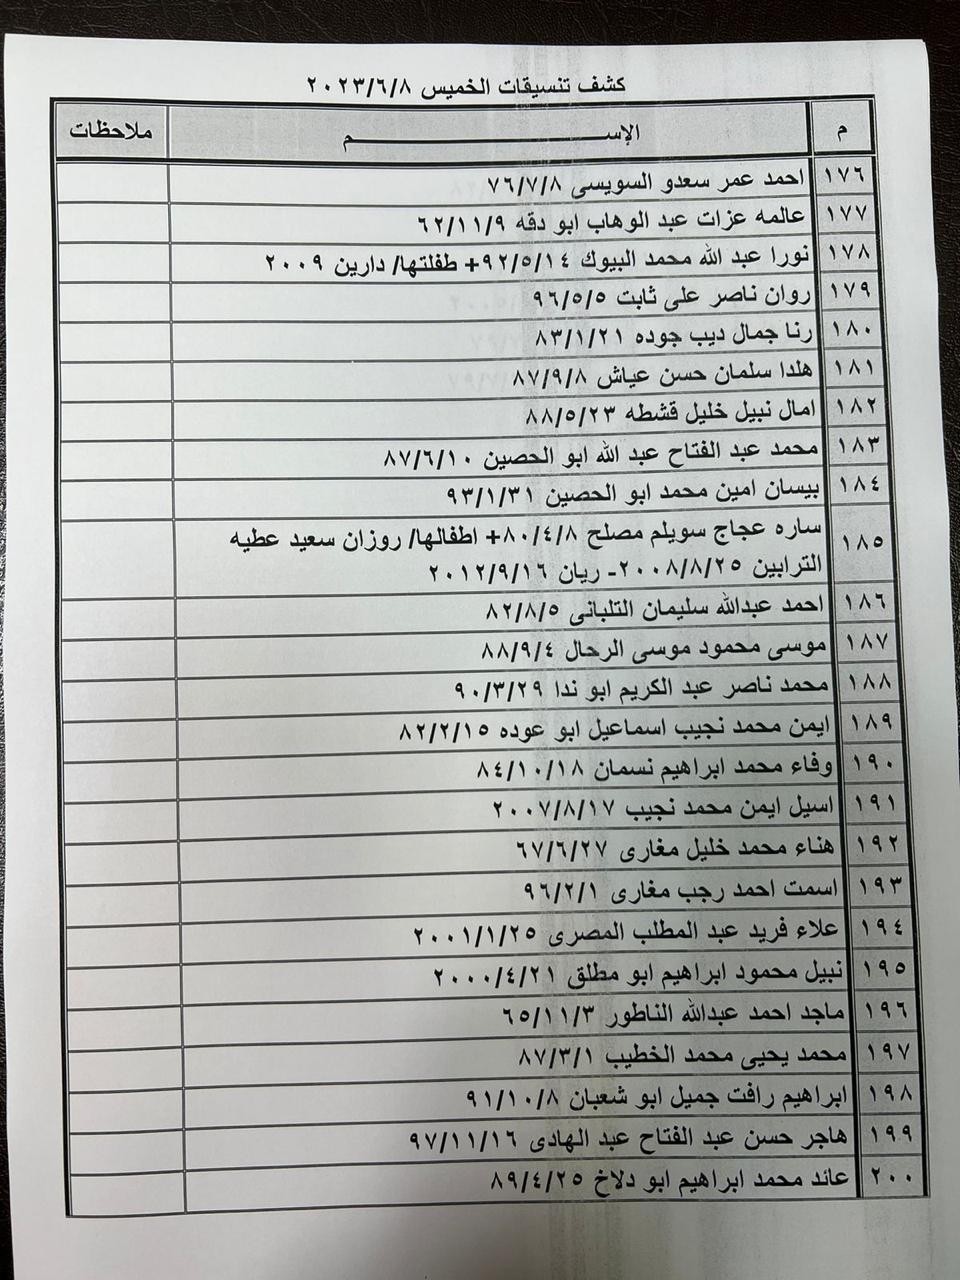 بالأسماء: كشف "تنسيقات مصرية" للسفر عبر معبر رفح الخميس 8 يونيو 2023